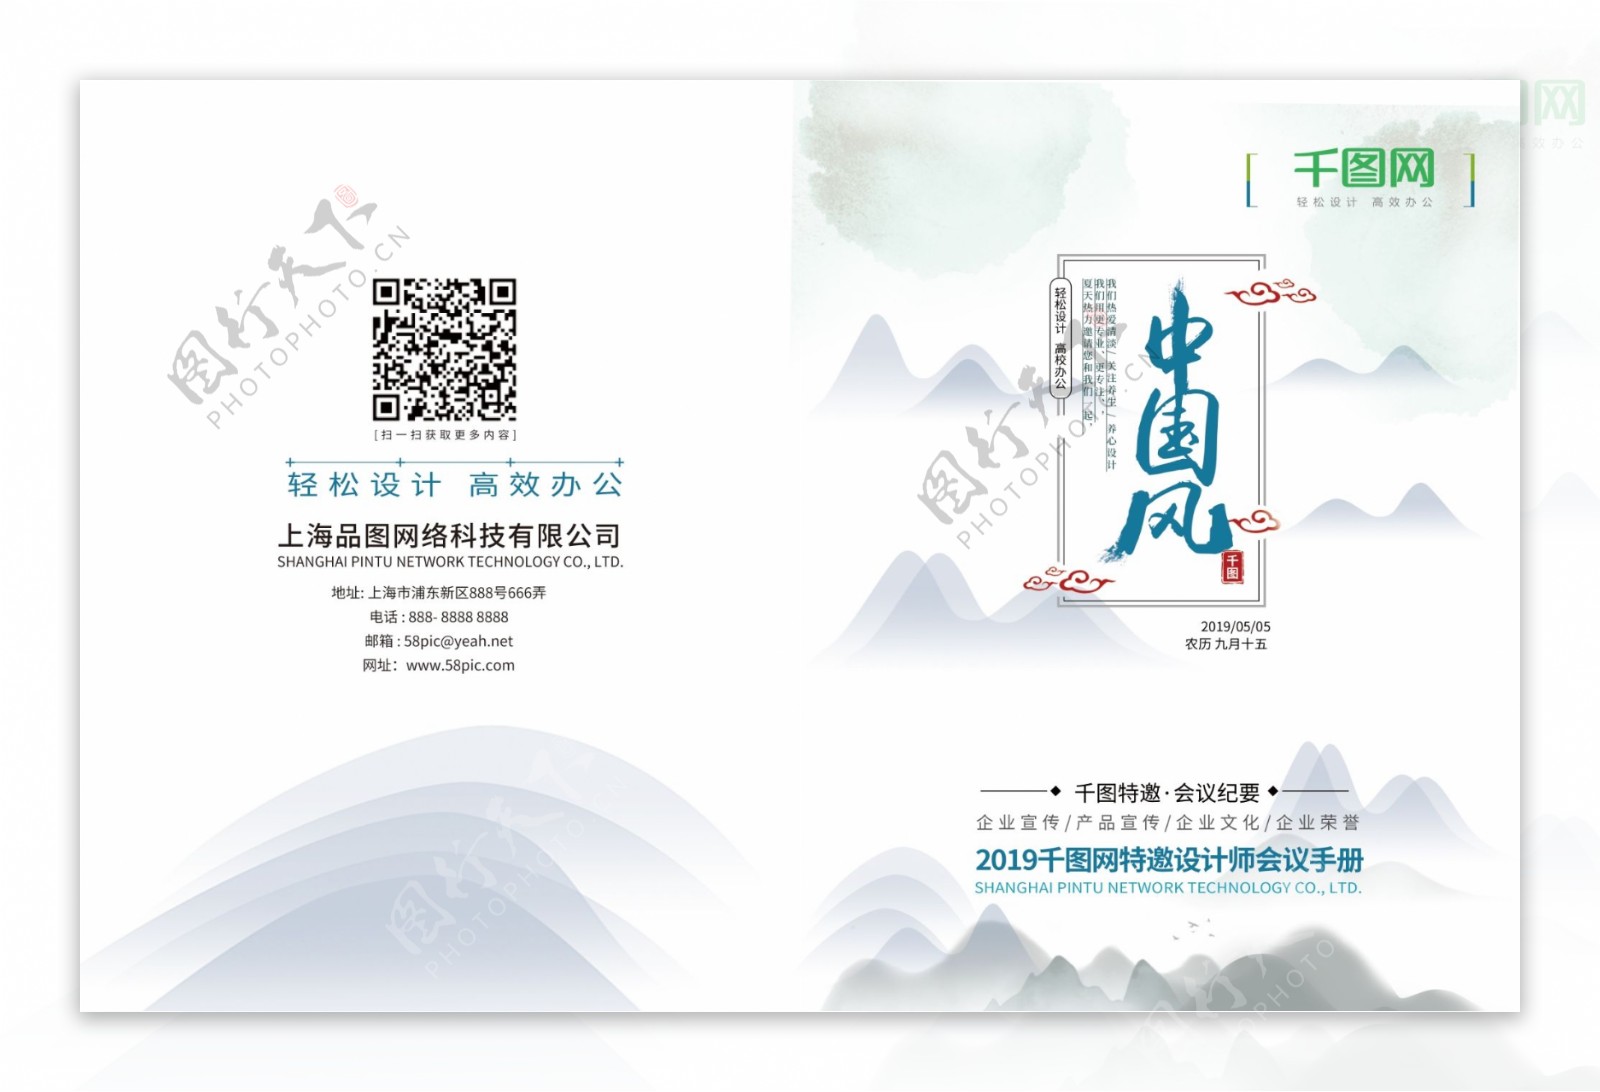 中国风画册封面设计